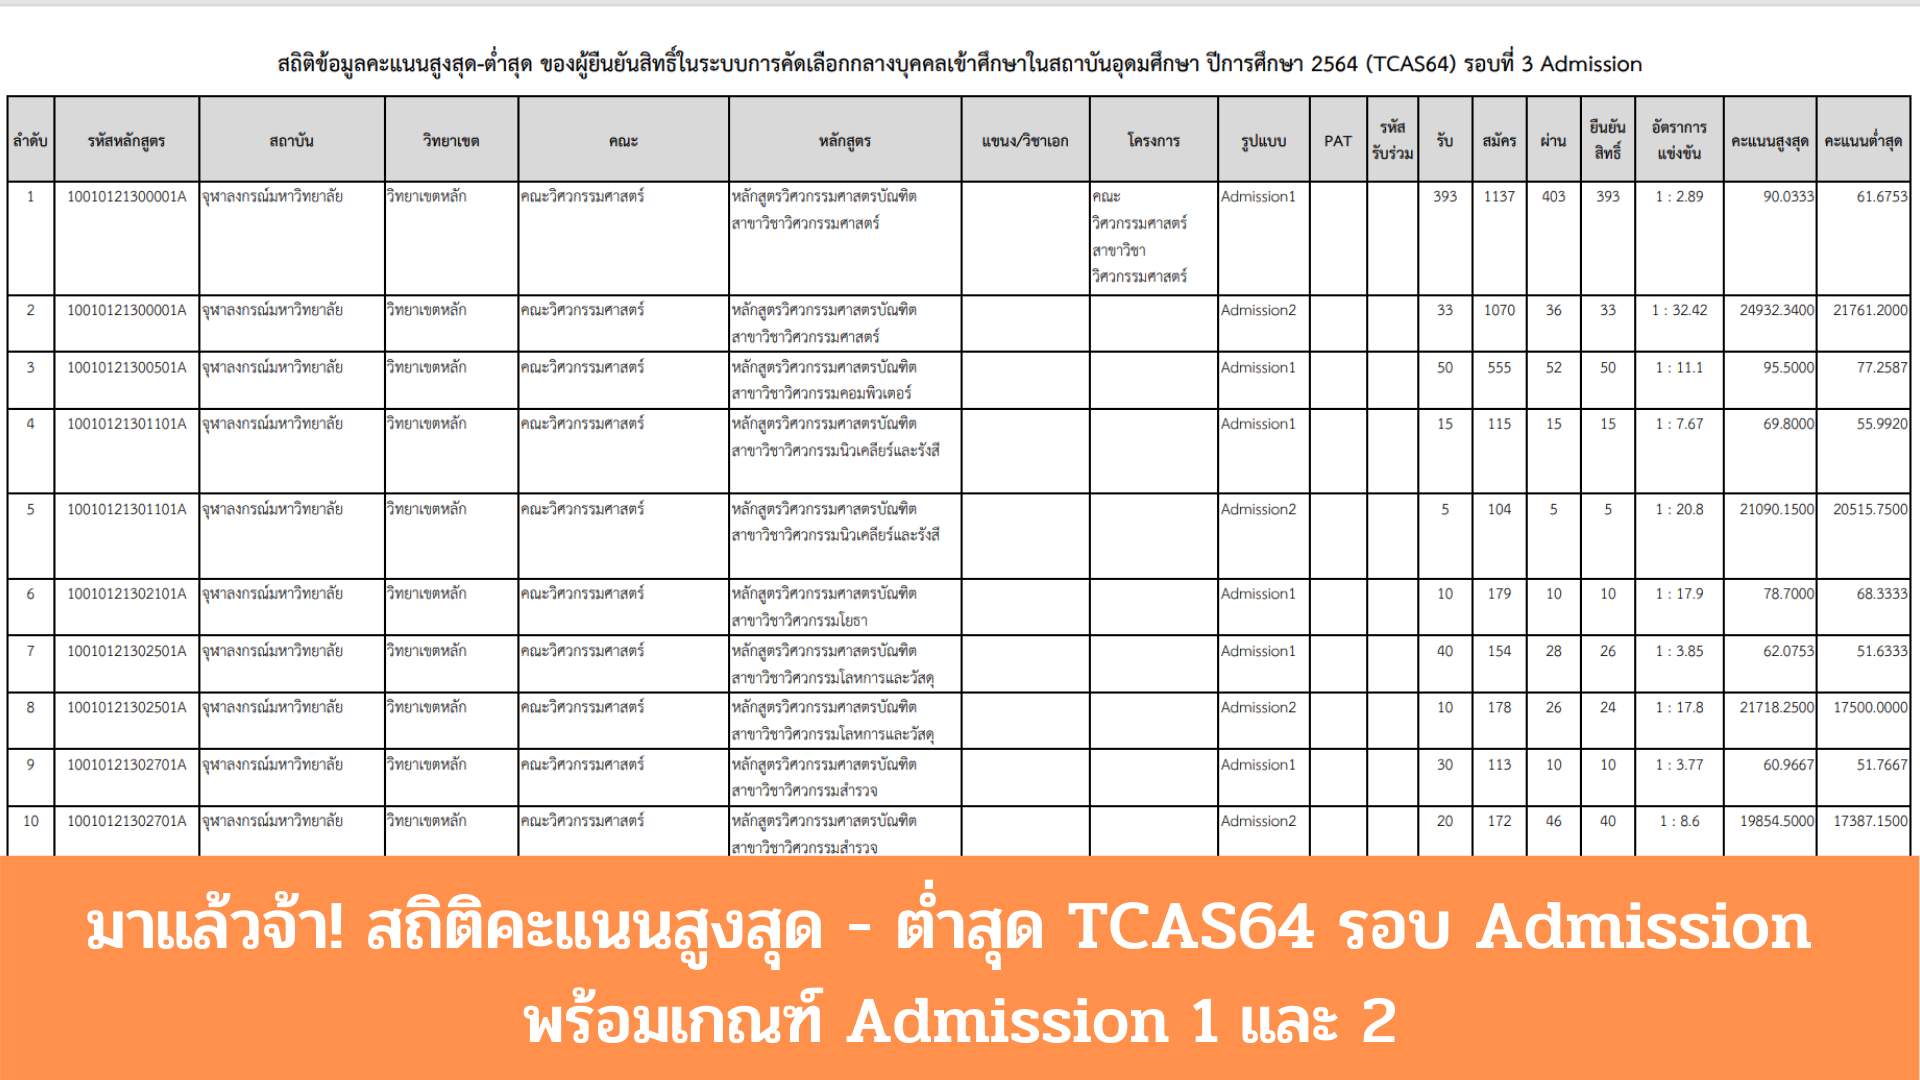 มาแล้ว! สถิติคะแนนสูงสุด - ต่ำสุด TCAS64 รอบ Admission พร้อมเกณฑ์ Admission 1 และ 2